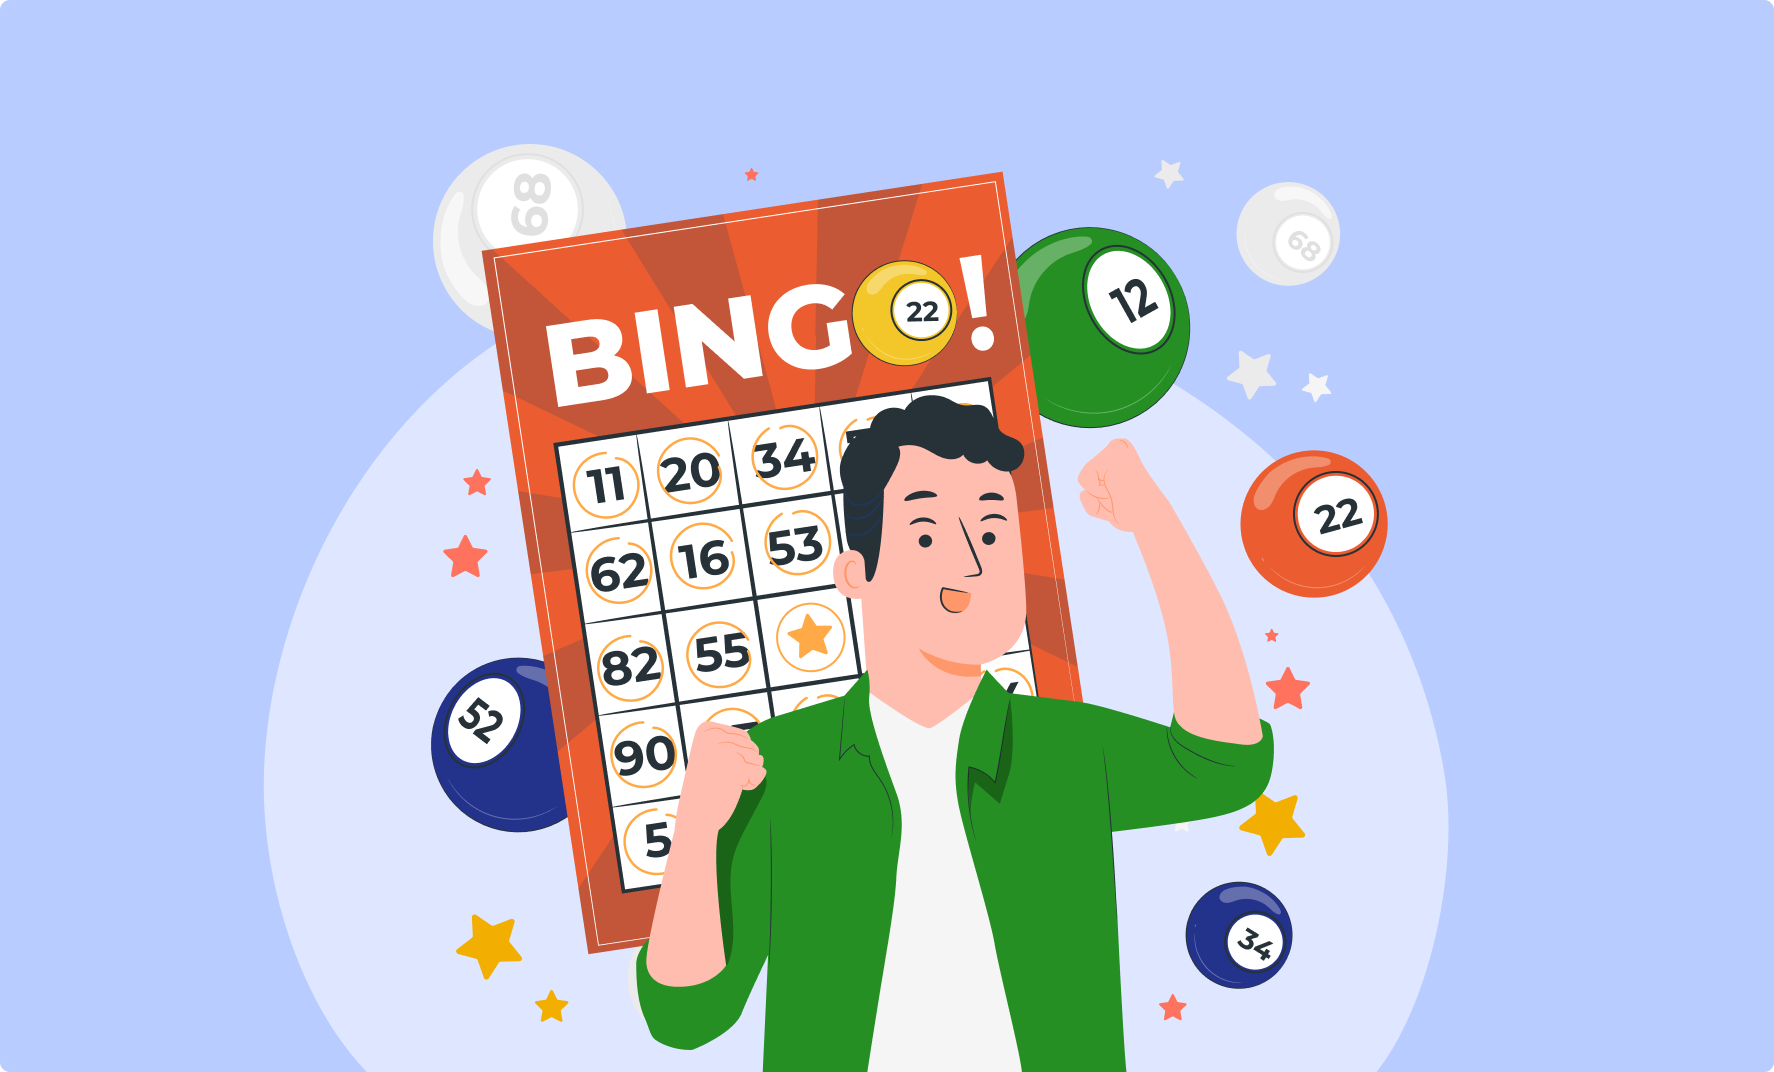 Bingo Online Brasil